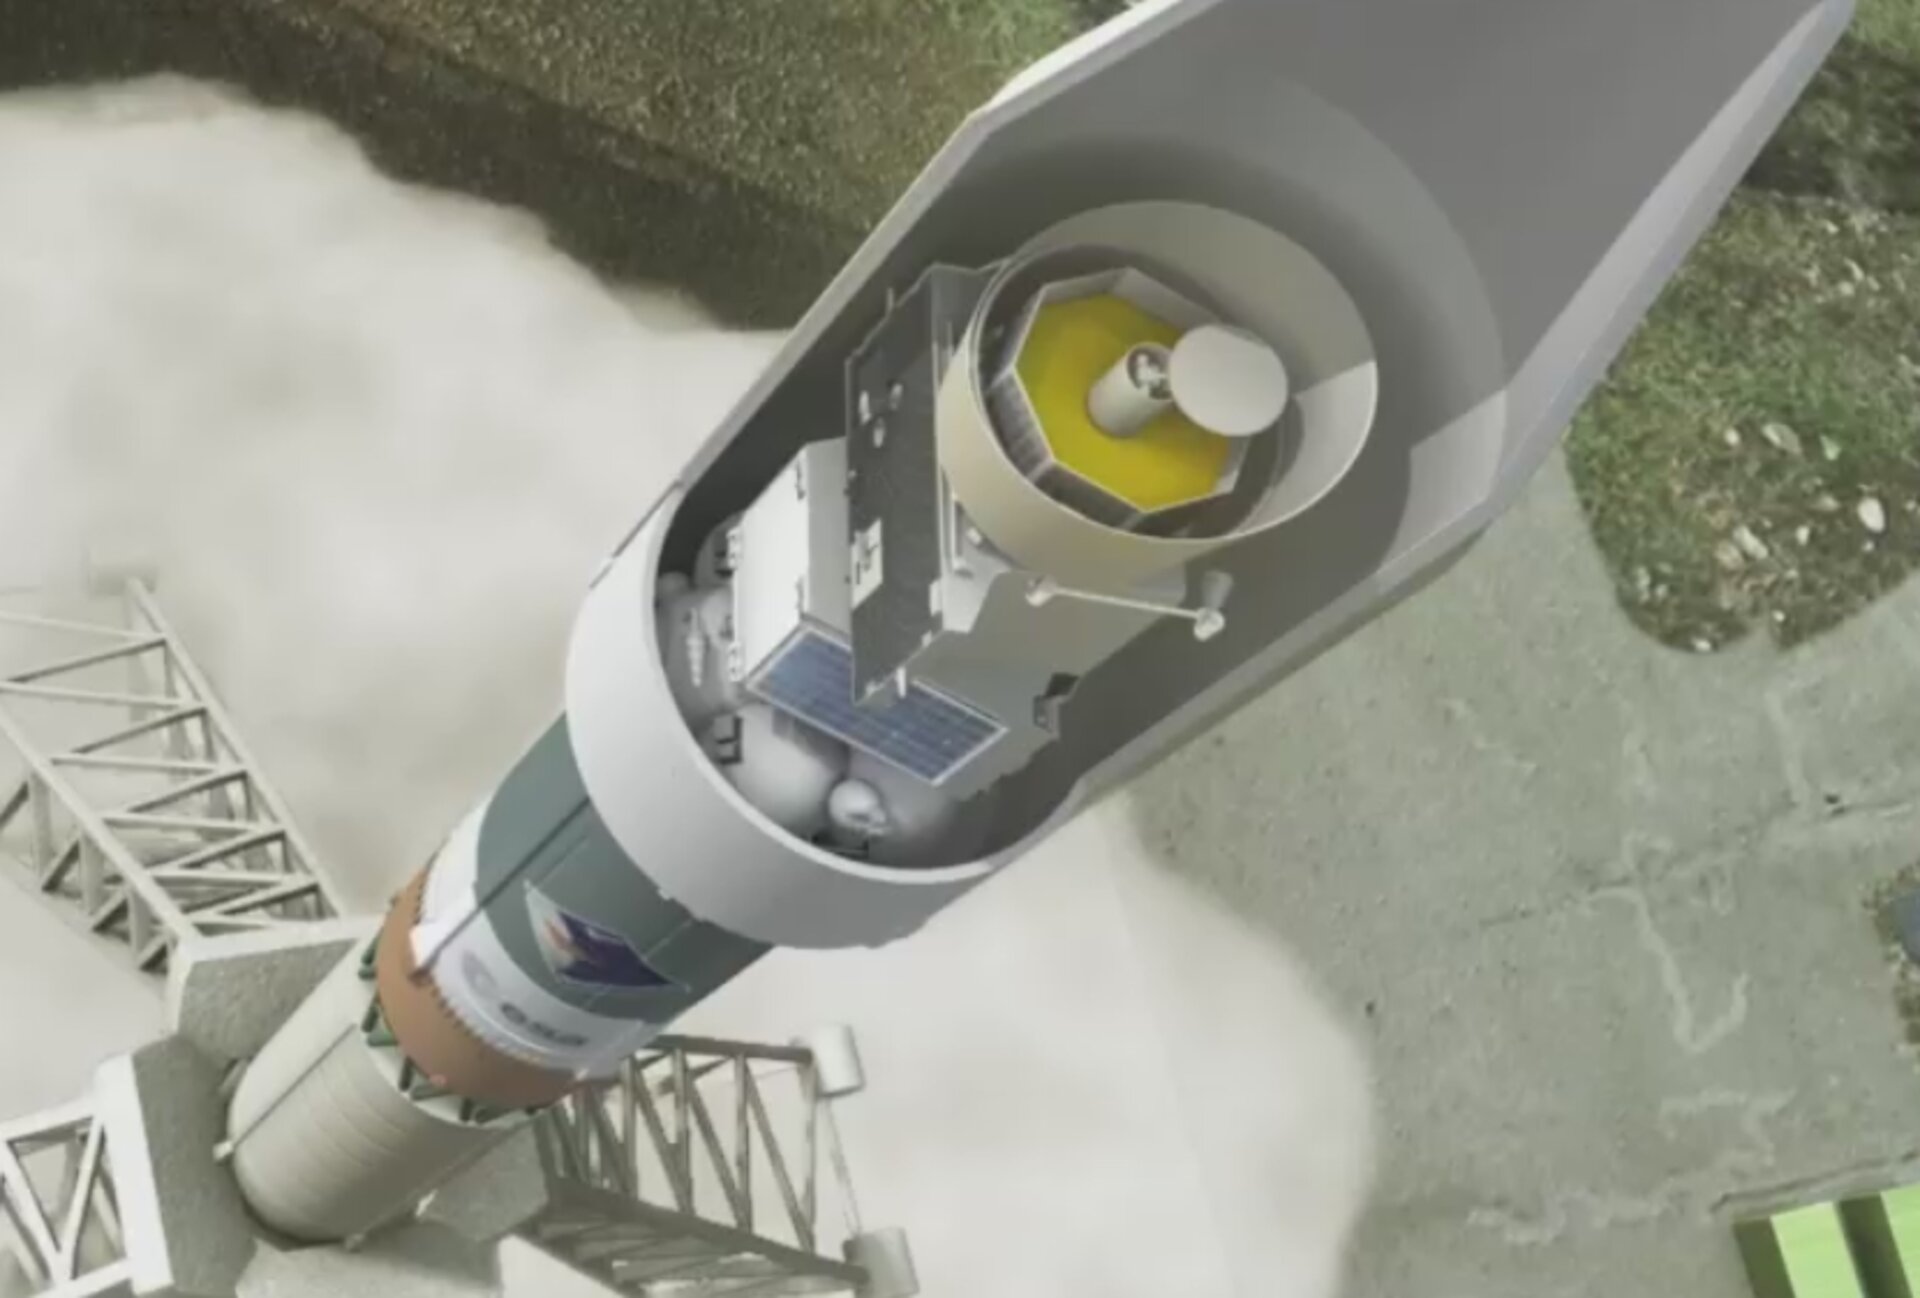 Zo zal BepiColombo in de neuskegel van de Sojoez 2-1B lanceerraket opgeborgen zitten